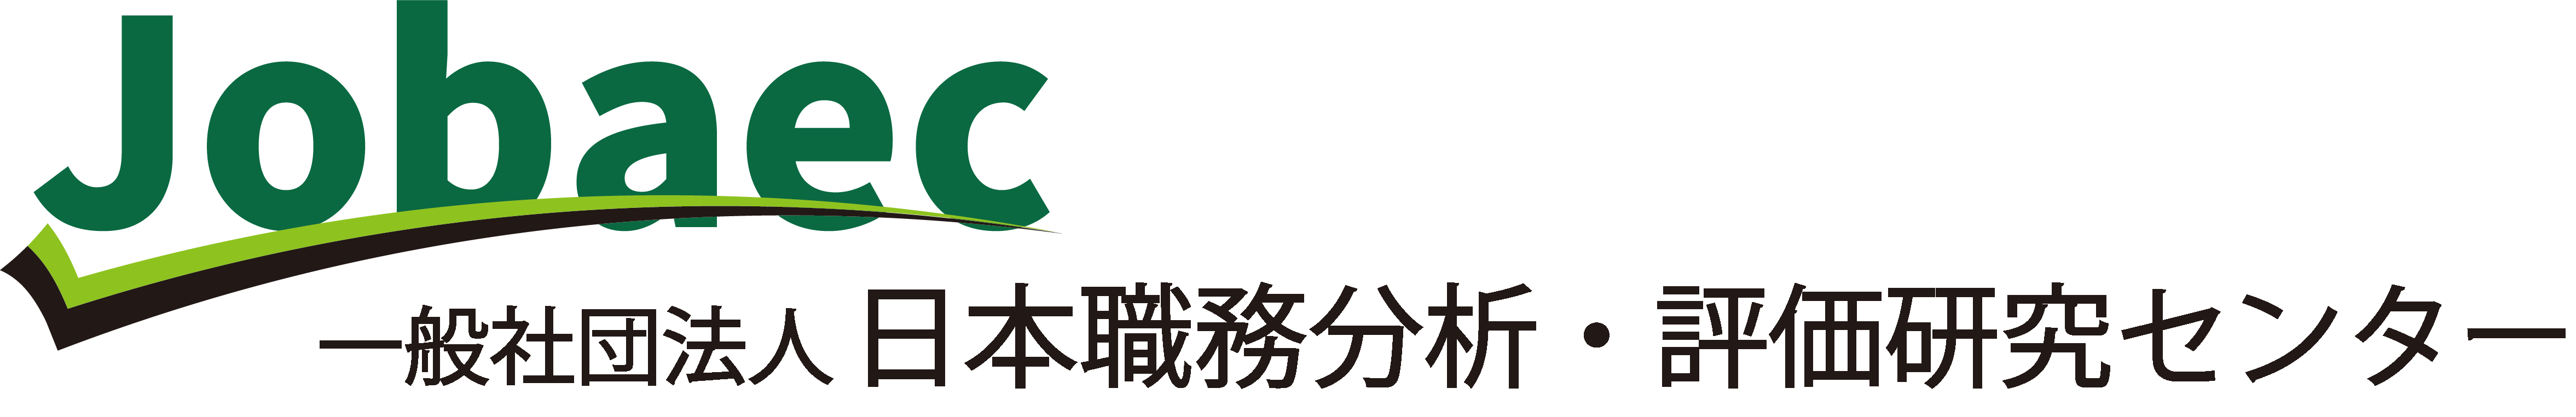 一般社団法人 日本職務分析・評価研究センター